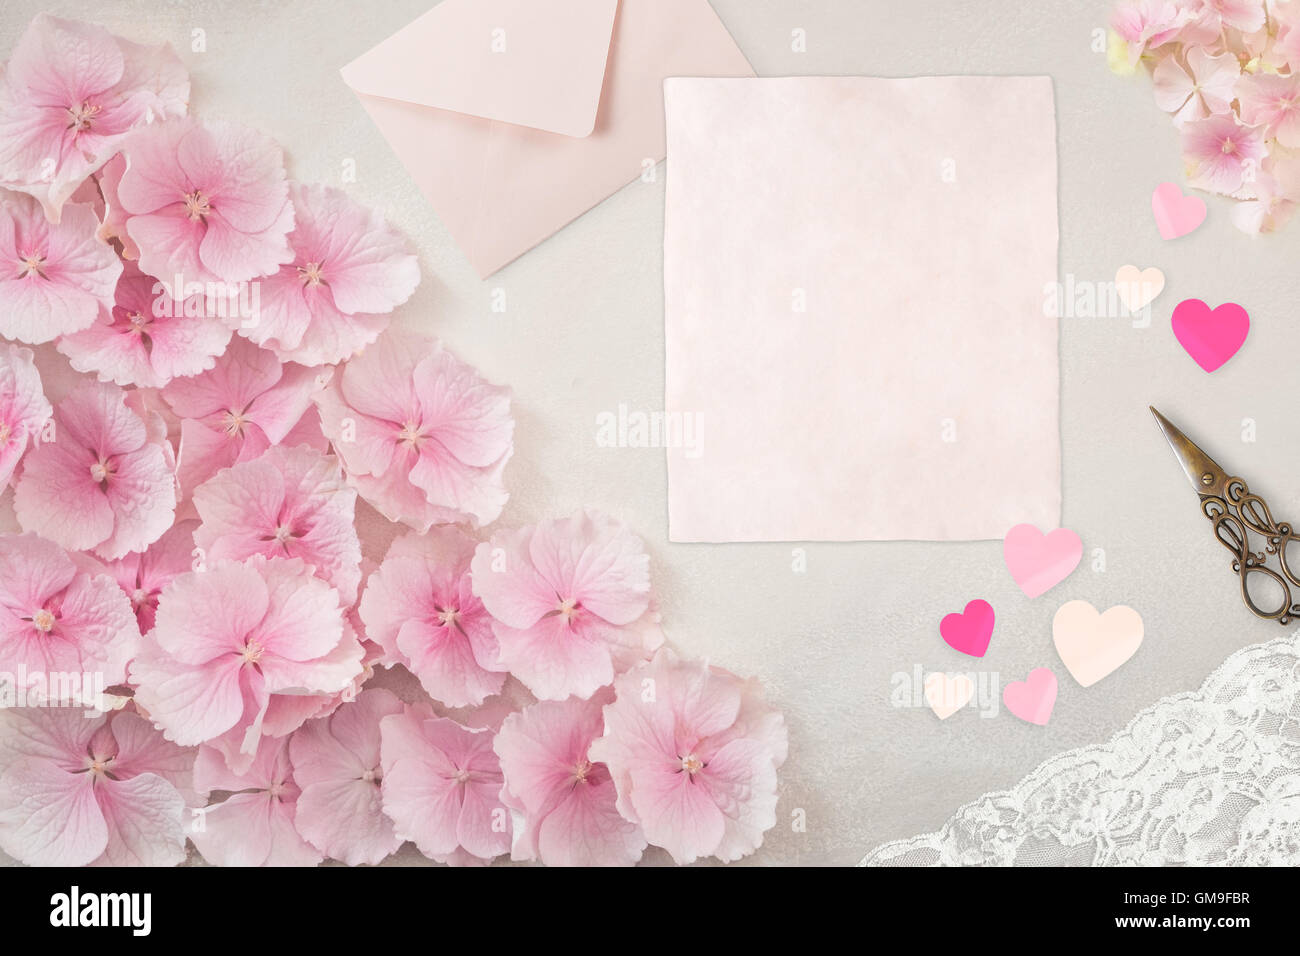 Piuttosto elegante Desktop, cartoleria Flatlay Mockup fotografia, con rosa pallido e notepaper busta Foto Stock